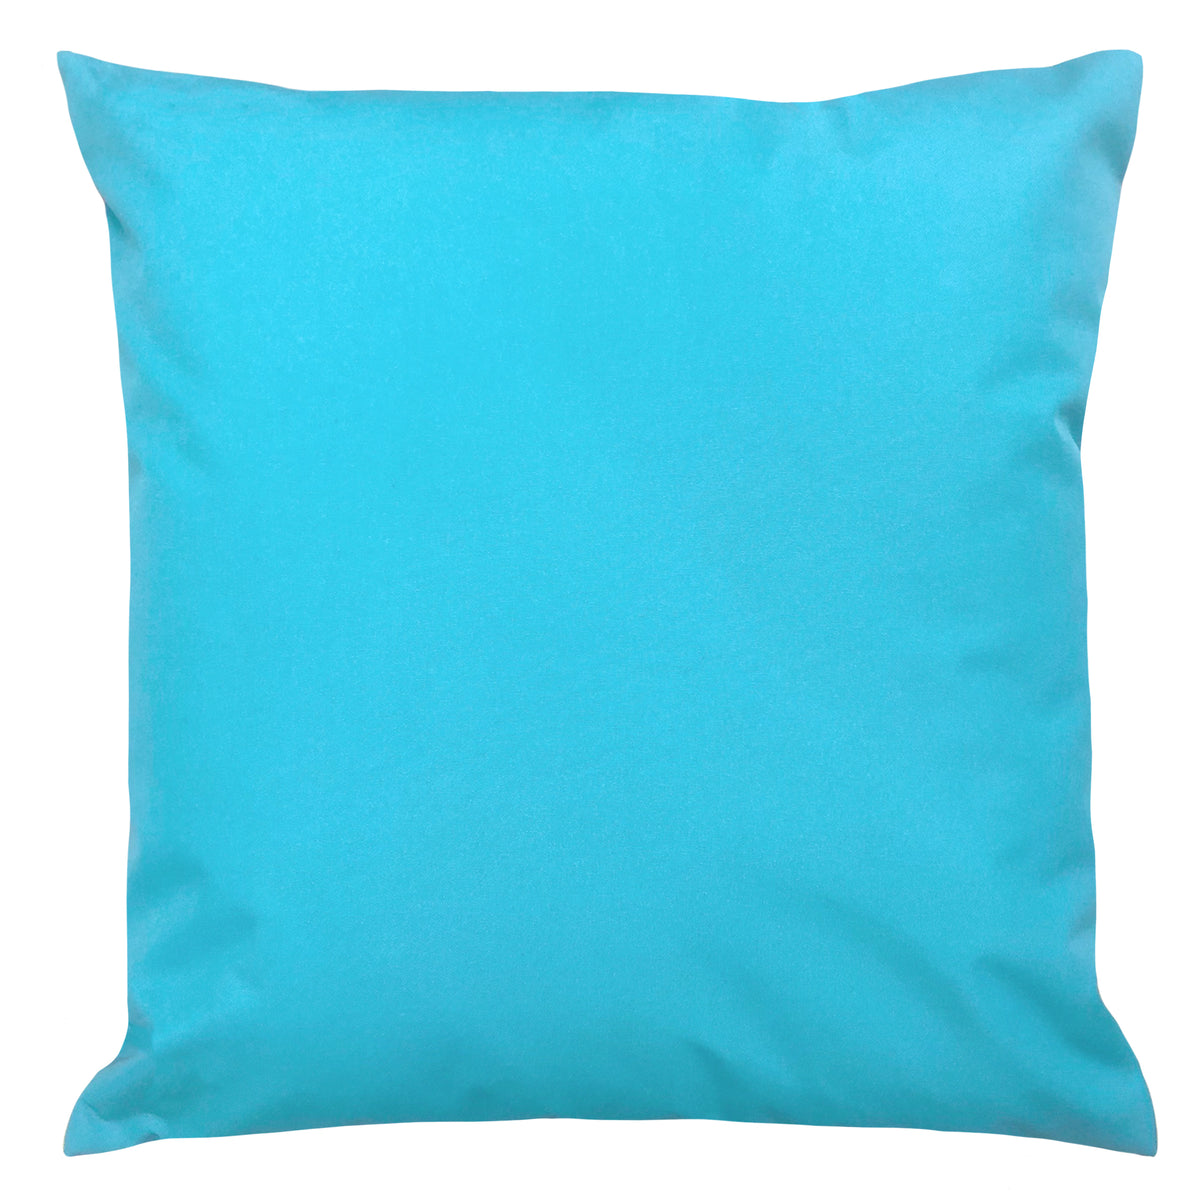 Ibiza 43cm Outdoor Polyester Cushion